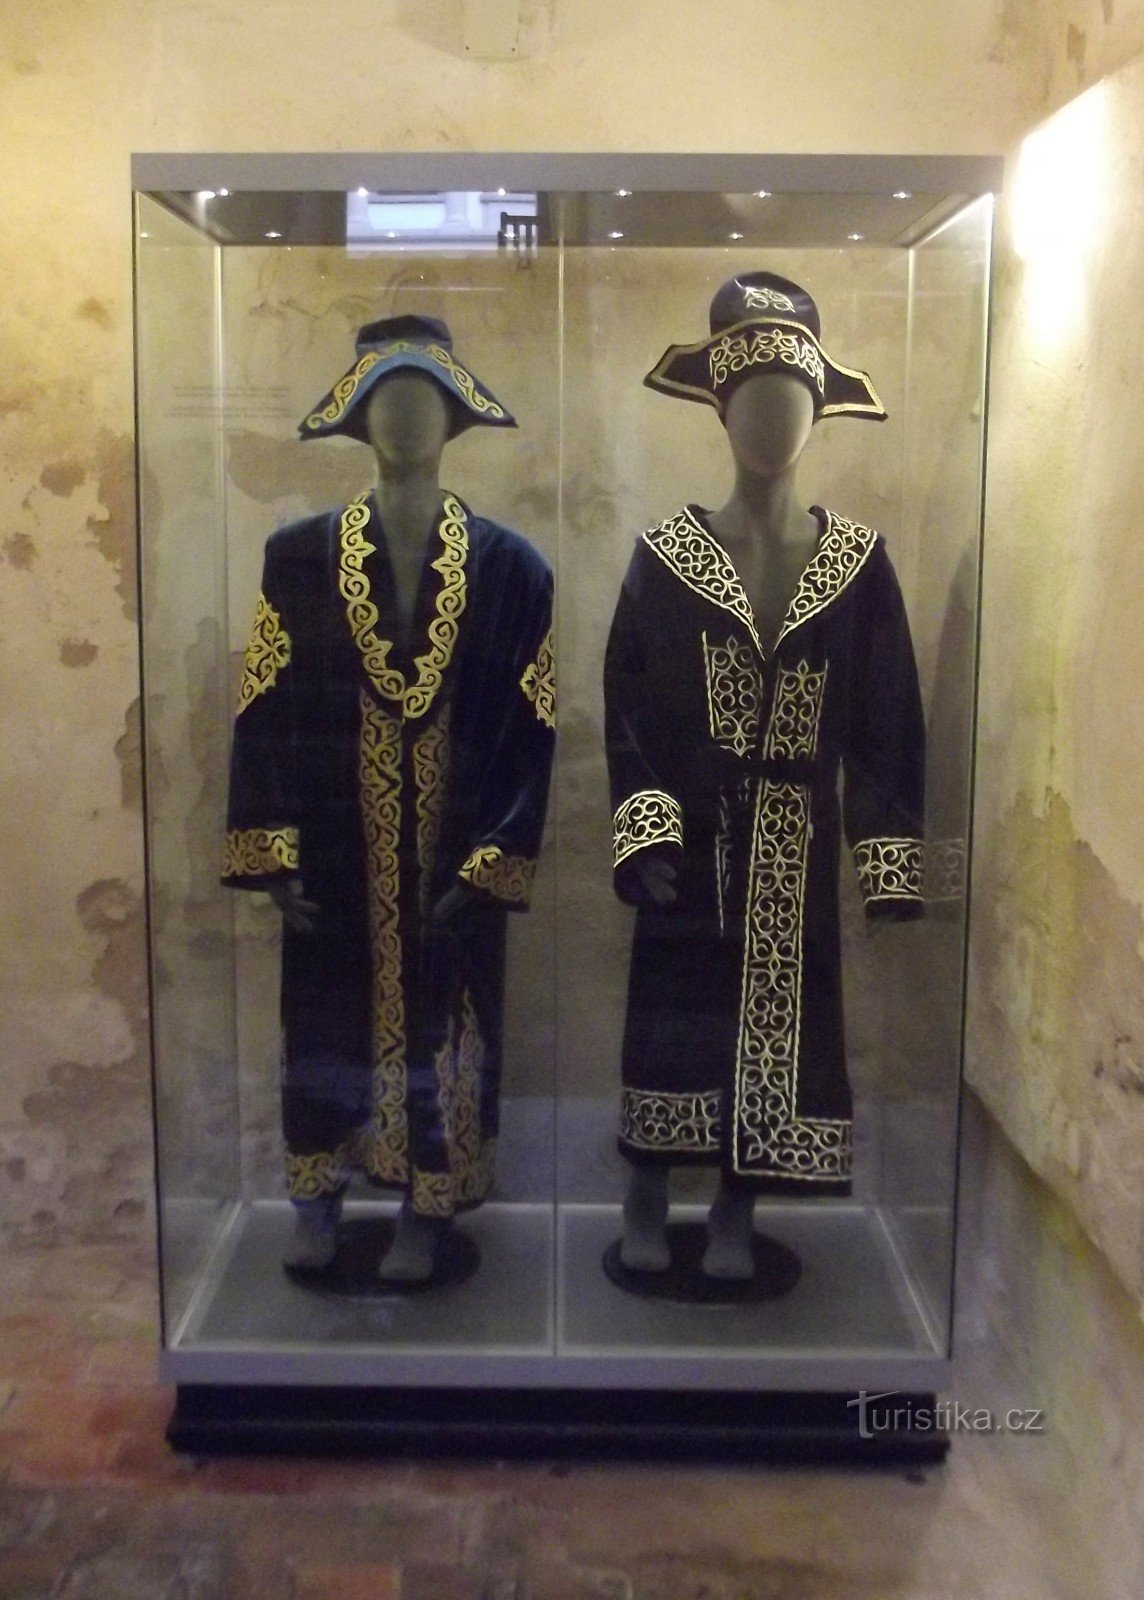 Trčkovská galleri - Permanent utställning av protokolldonationer